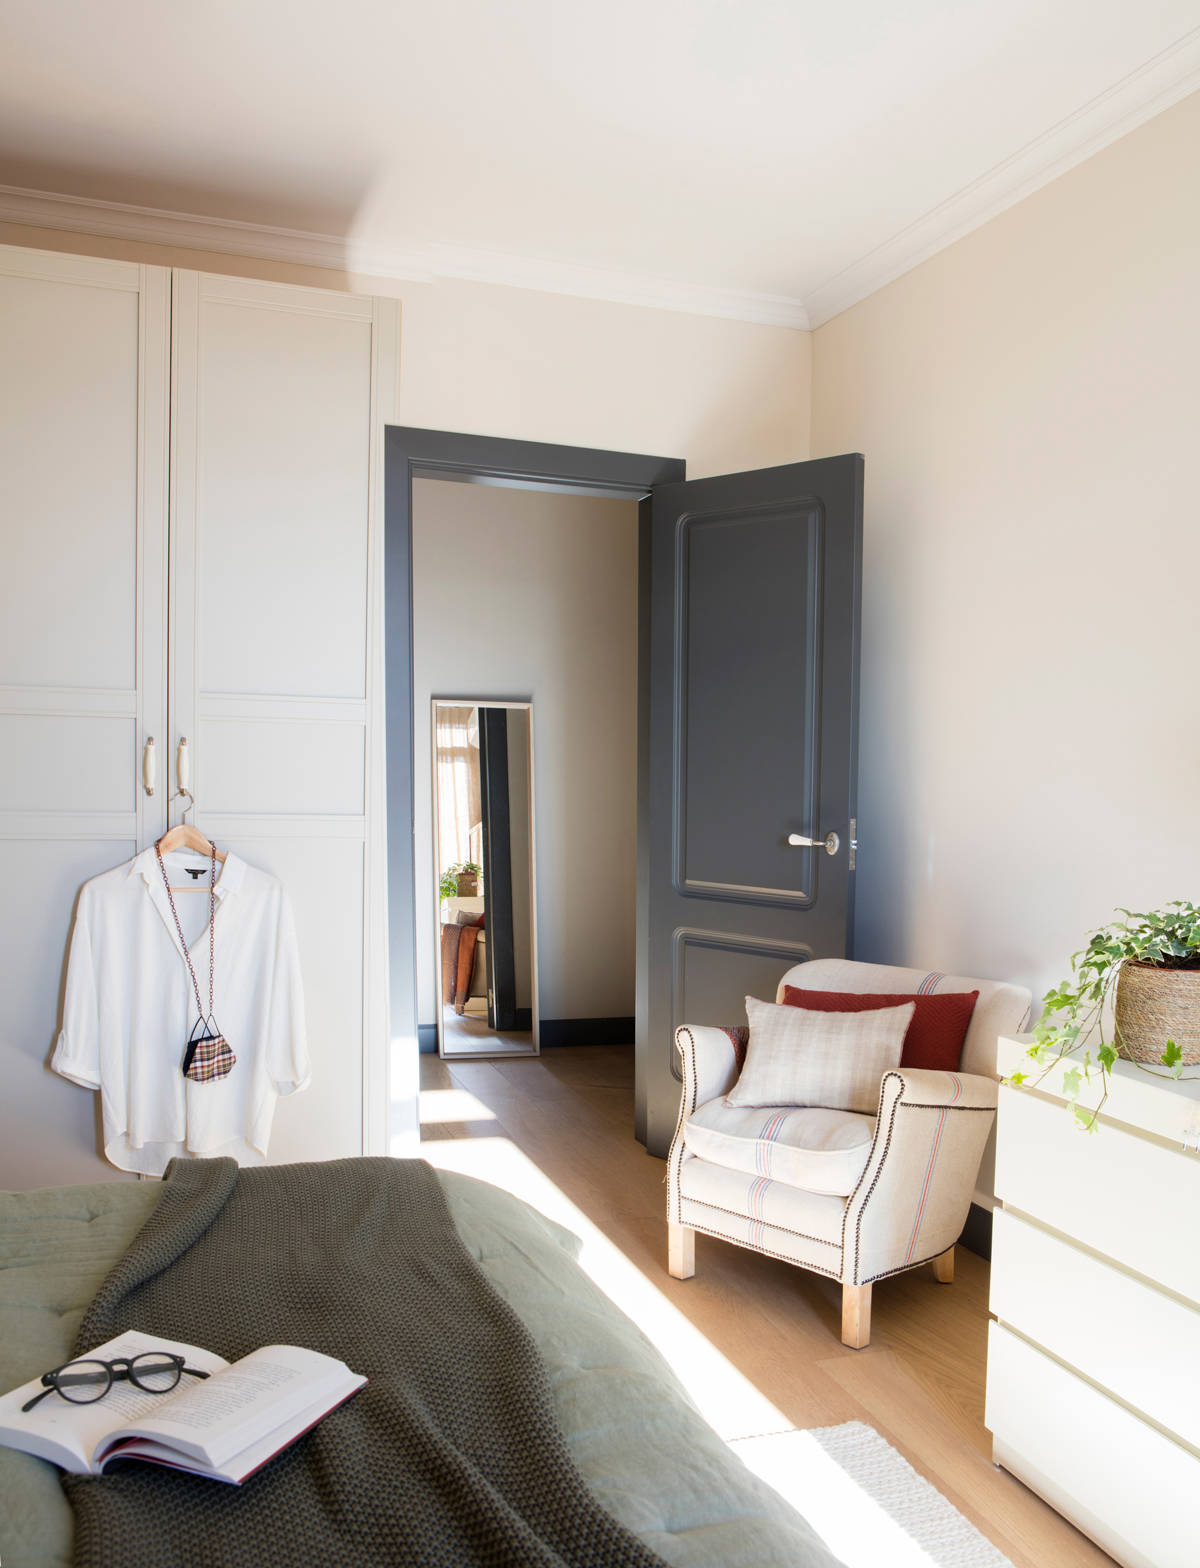 Dormitorio con cómoda blanca modelo Malm y butaca tapizada. 